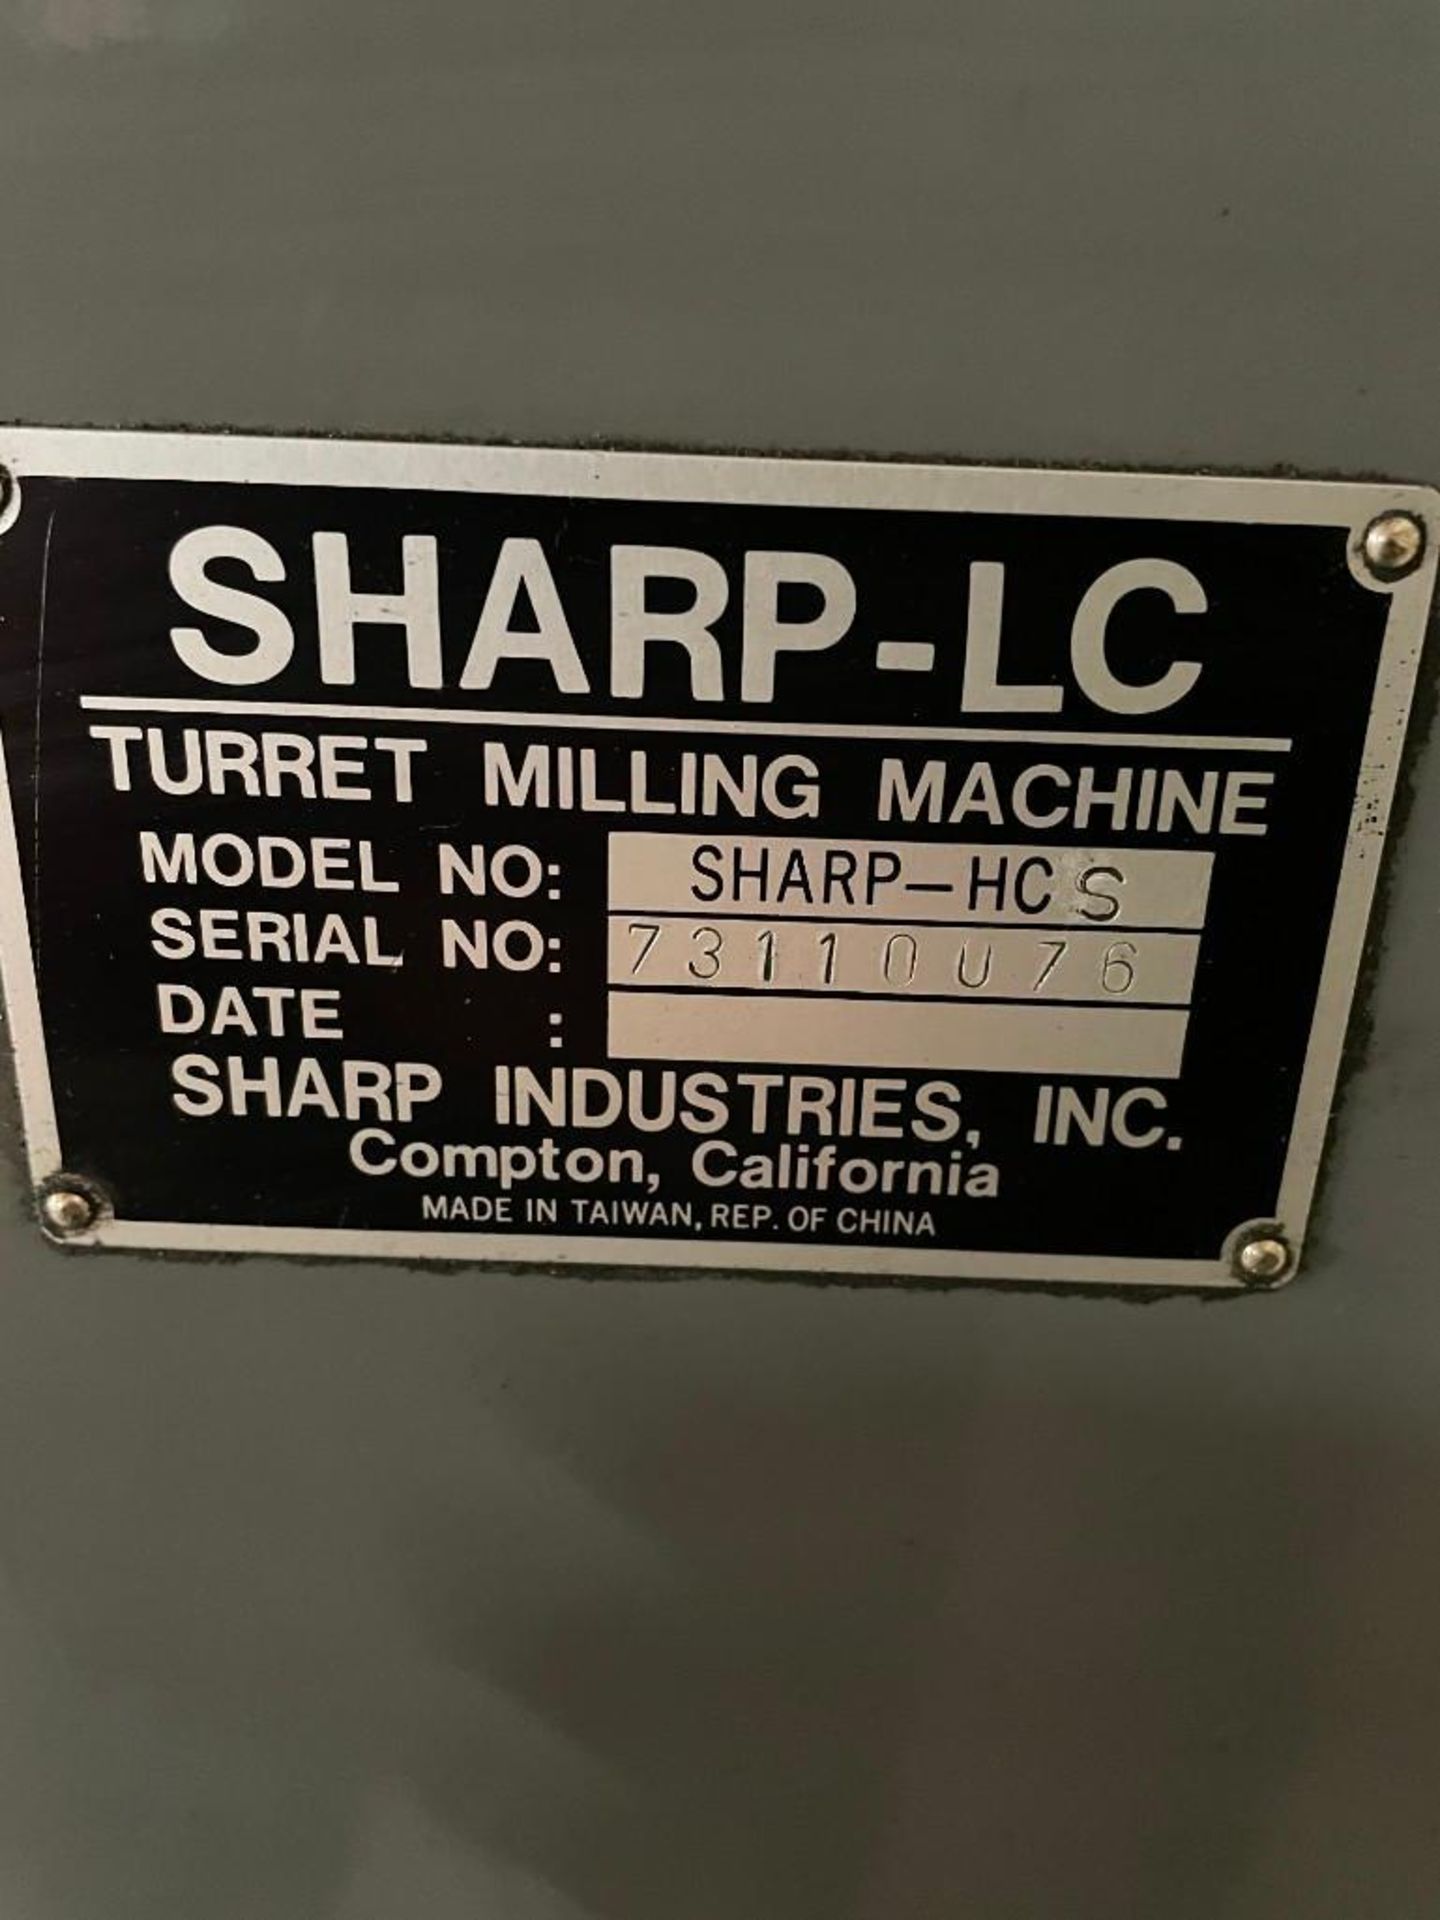 SHARP-LC VERTICAL KNEE TURRET MILLING MACHINE SHARP-HCS / BRIDGEPORT CLONE - Image 10 of 11